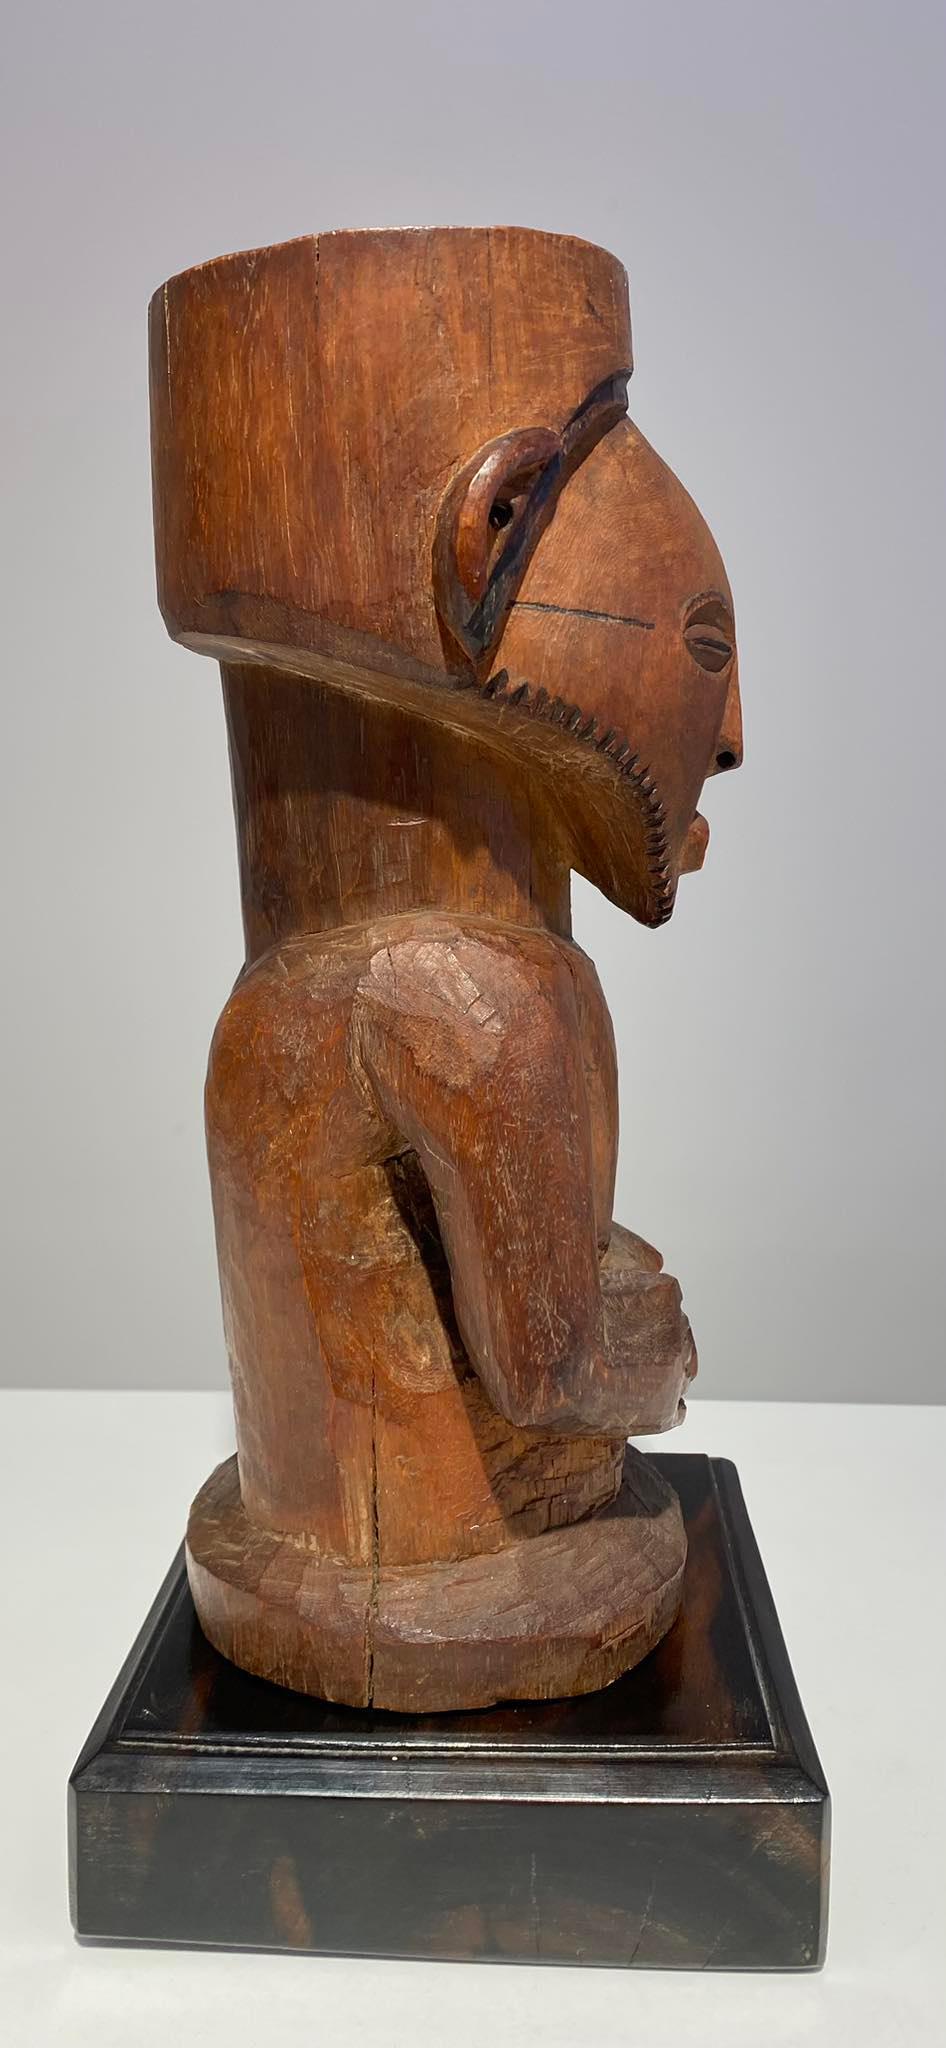 XX secolo Feticcio dell'antenato in legno Kusu ca 1900 DR Congo Africa Arte Tribale dell'Africa Centrale in vendita